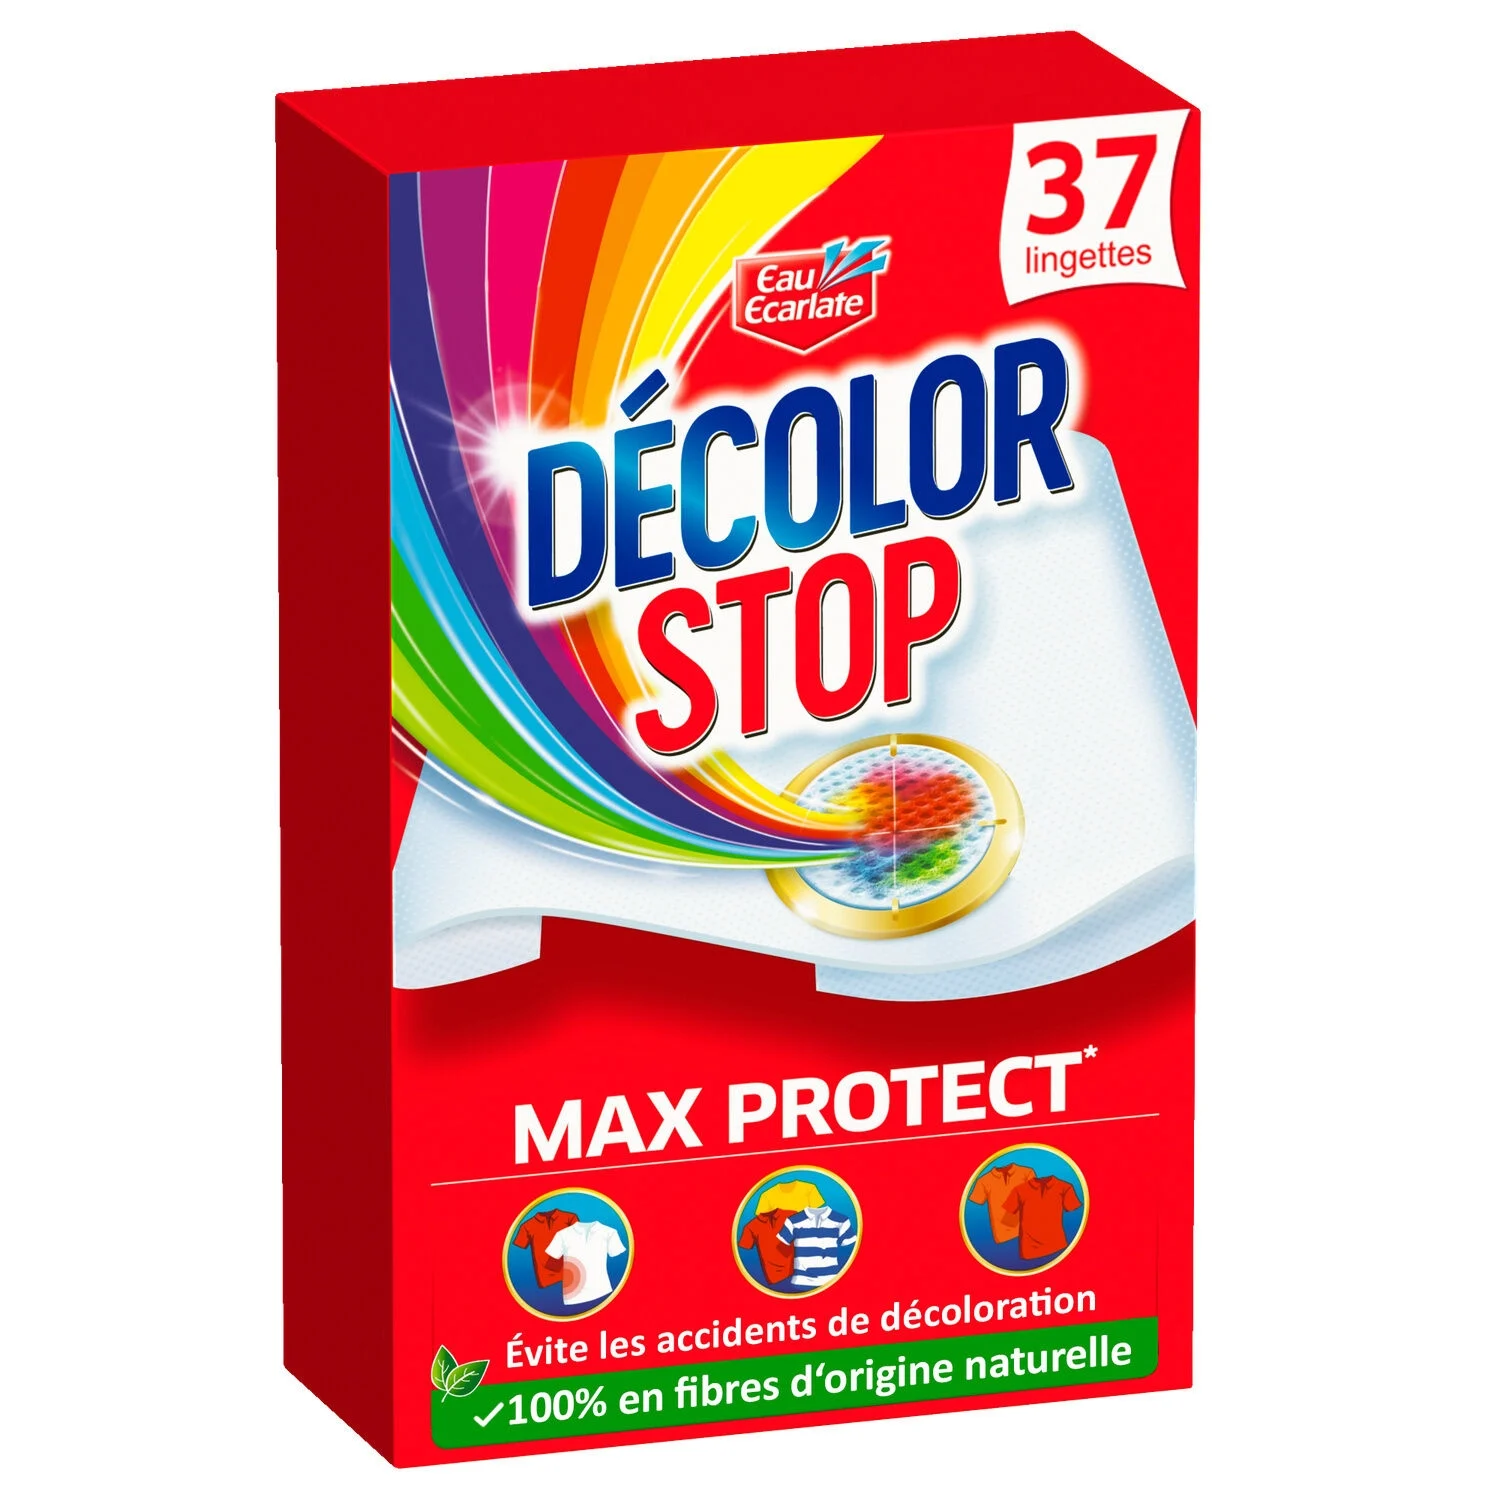 Lingette Anti-décoloration Max Protect - Decolor Stop